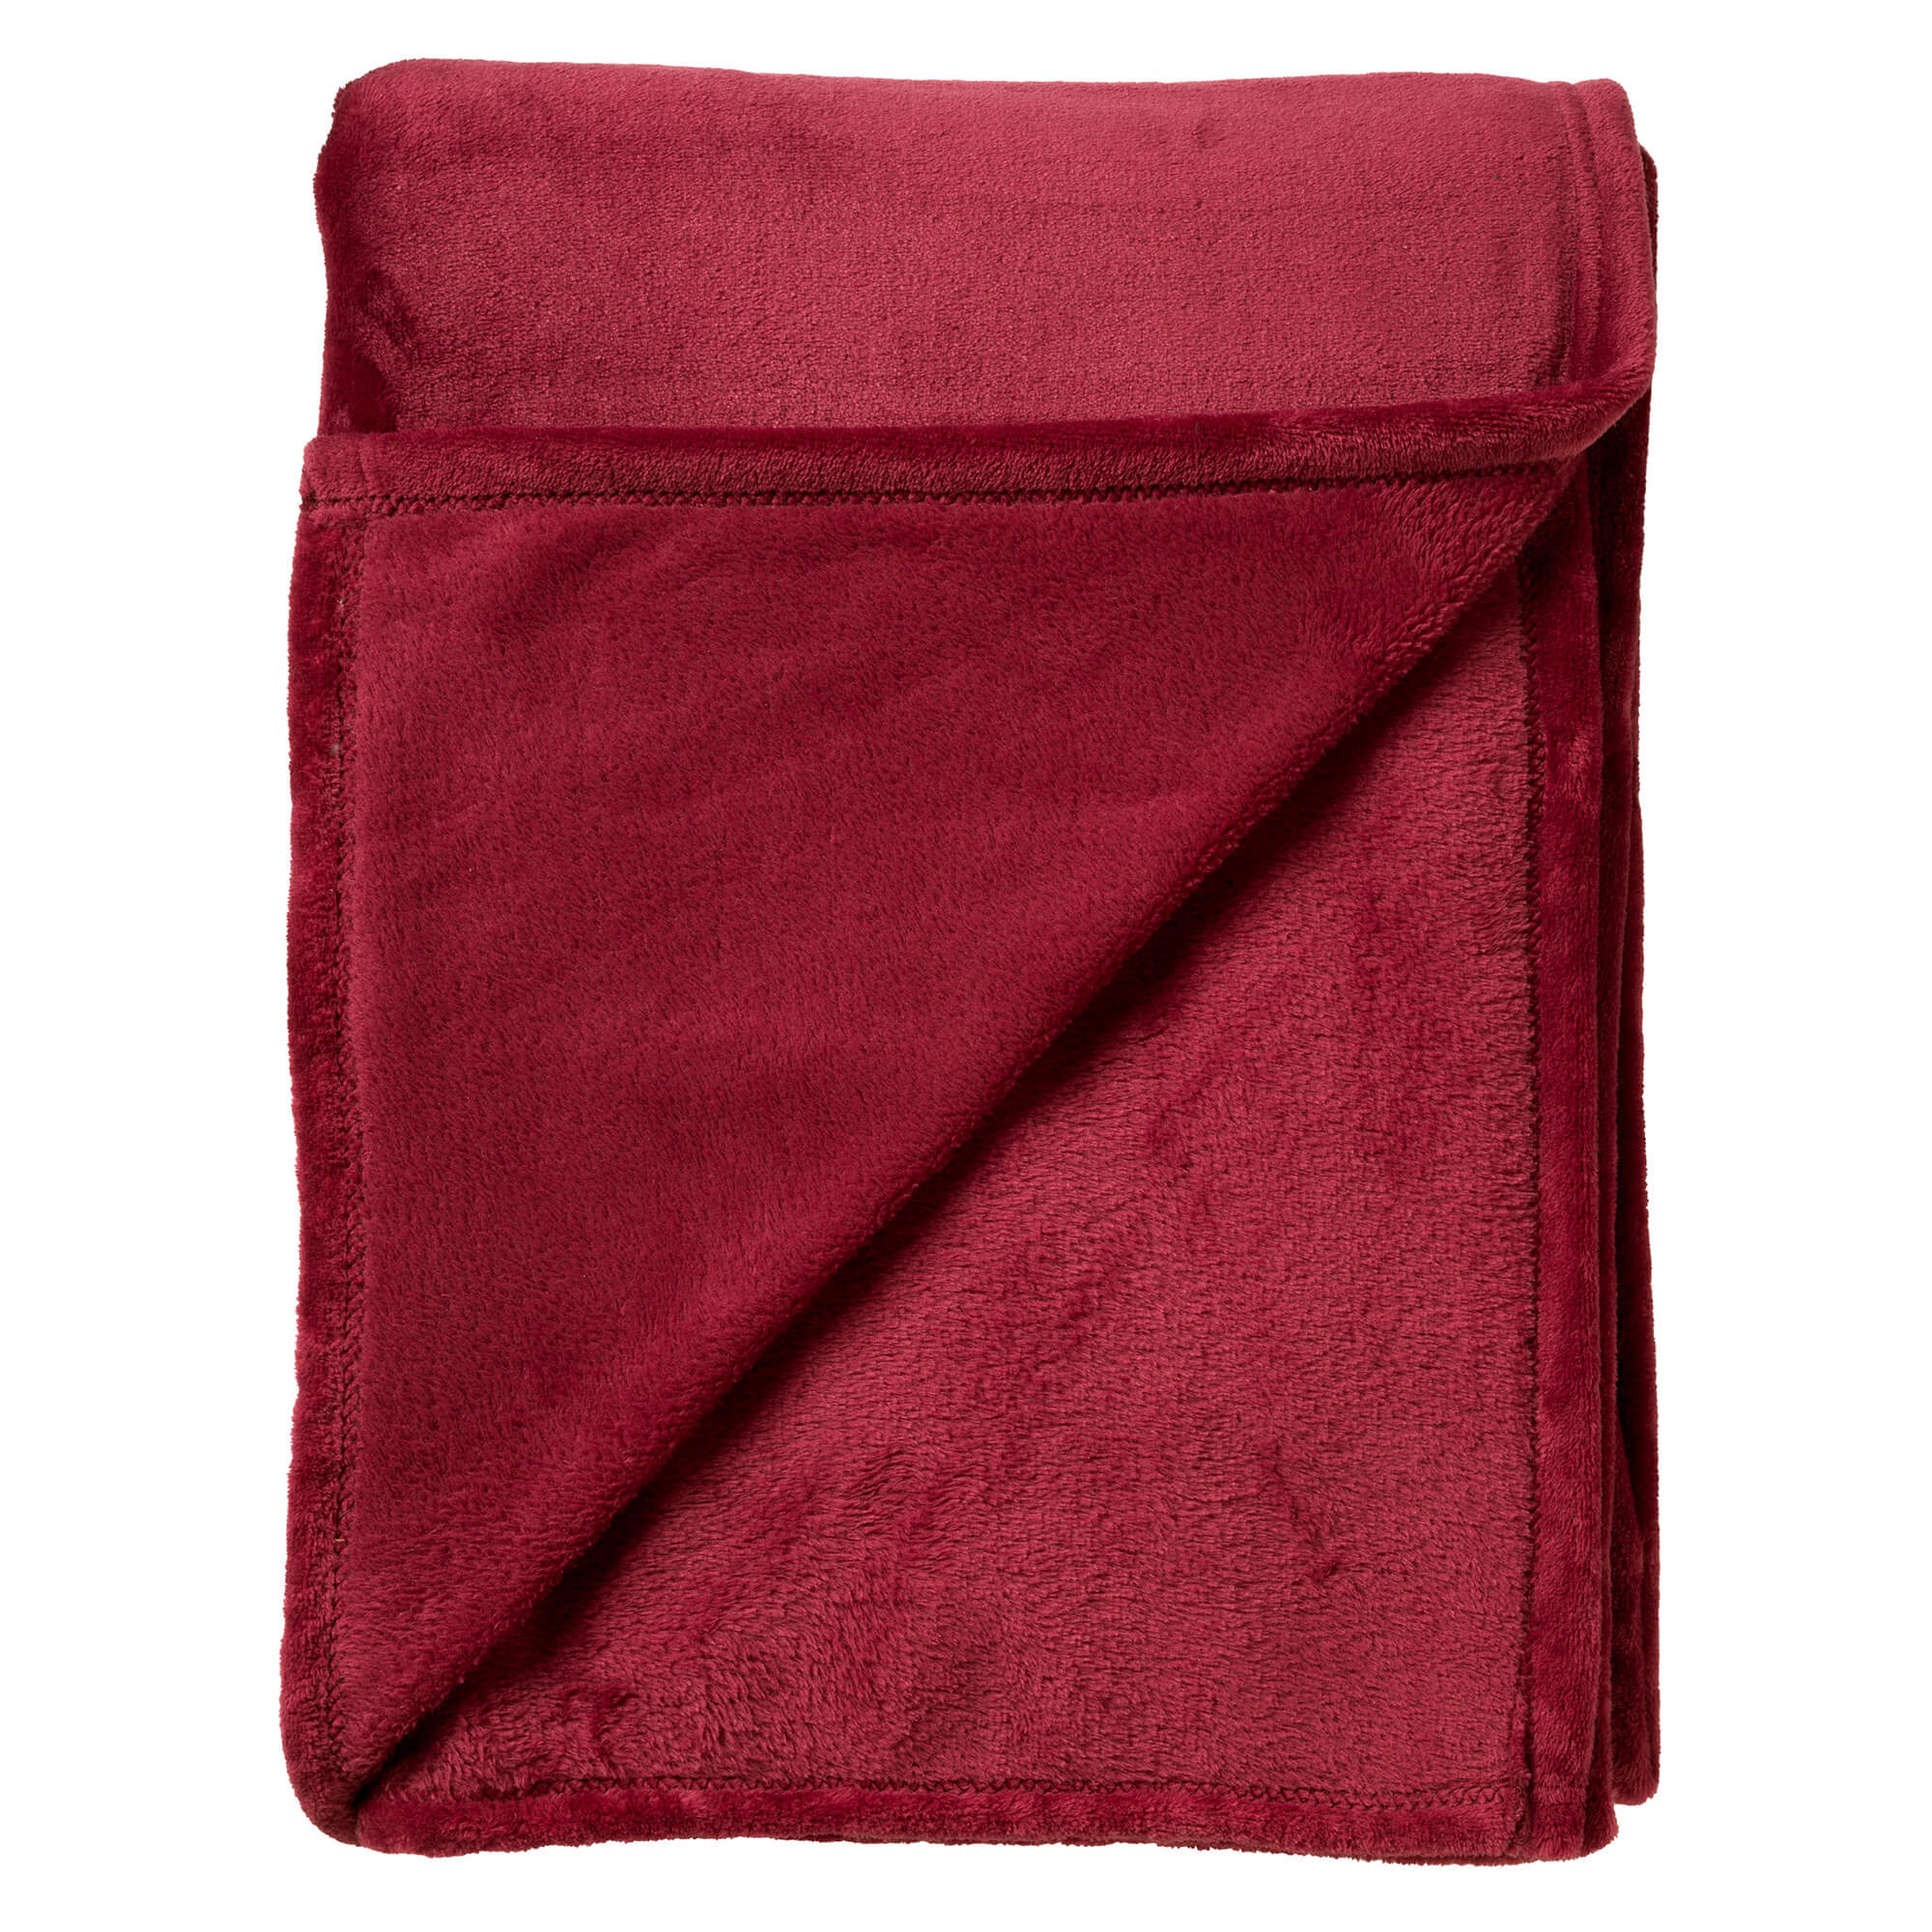 CHARLIE - Plaid 200x220 cm - extra grote fleece deken - effen kleur - Merlot - rood bordeaux 